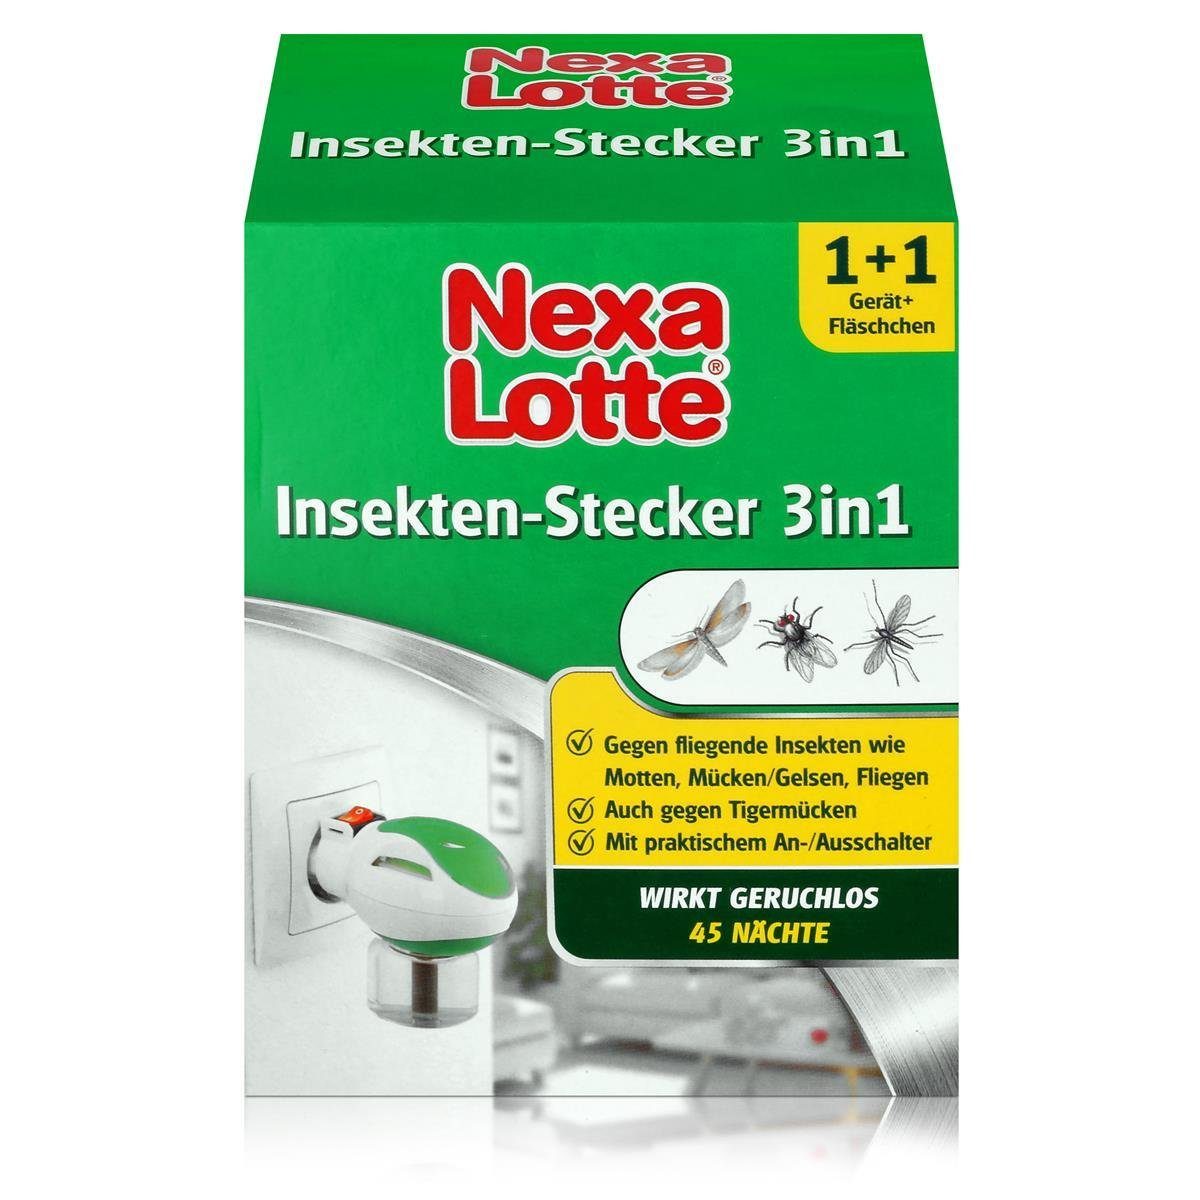 Nexa Lotte Insektenfalle Nexa Lotte Insekten-Stecker 3in1 - Gegen Mücken, Fliegen und Motten